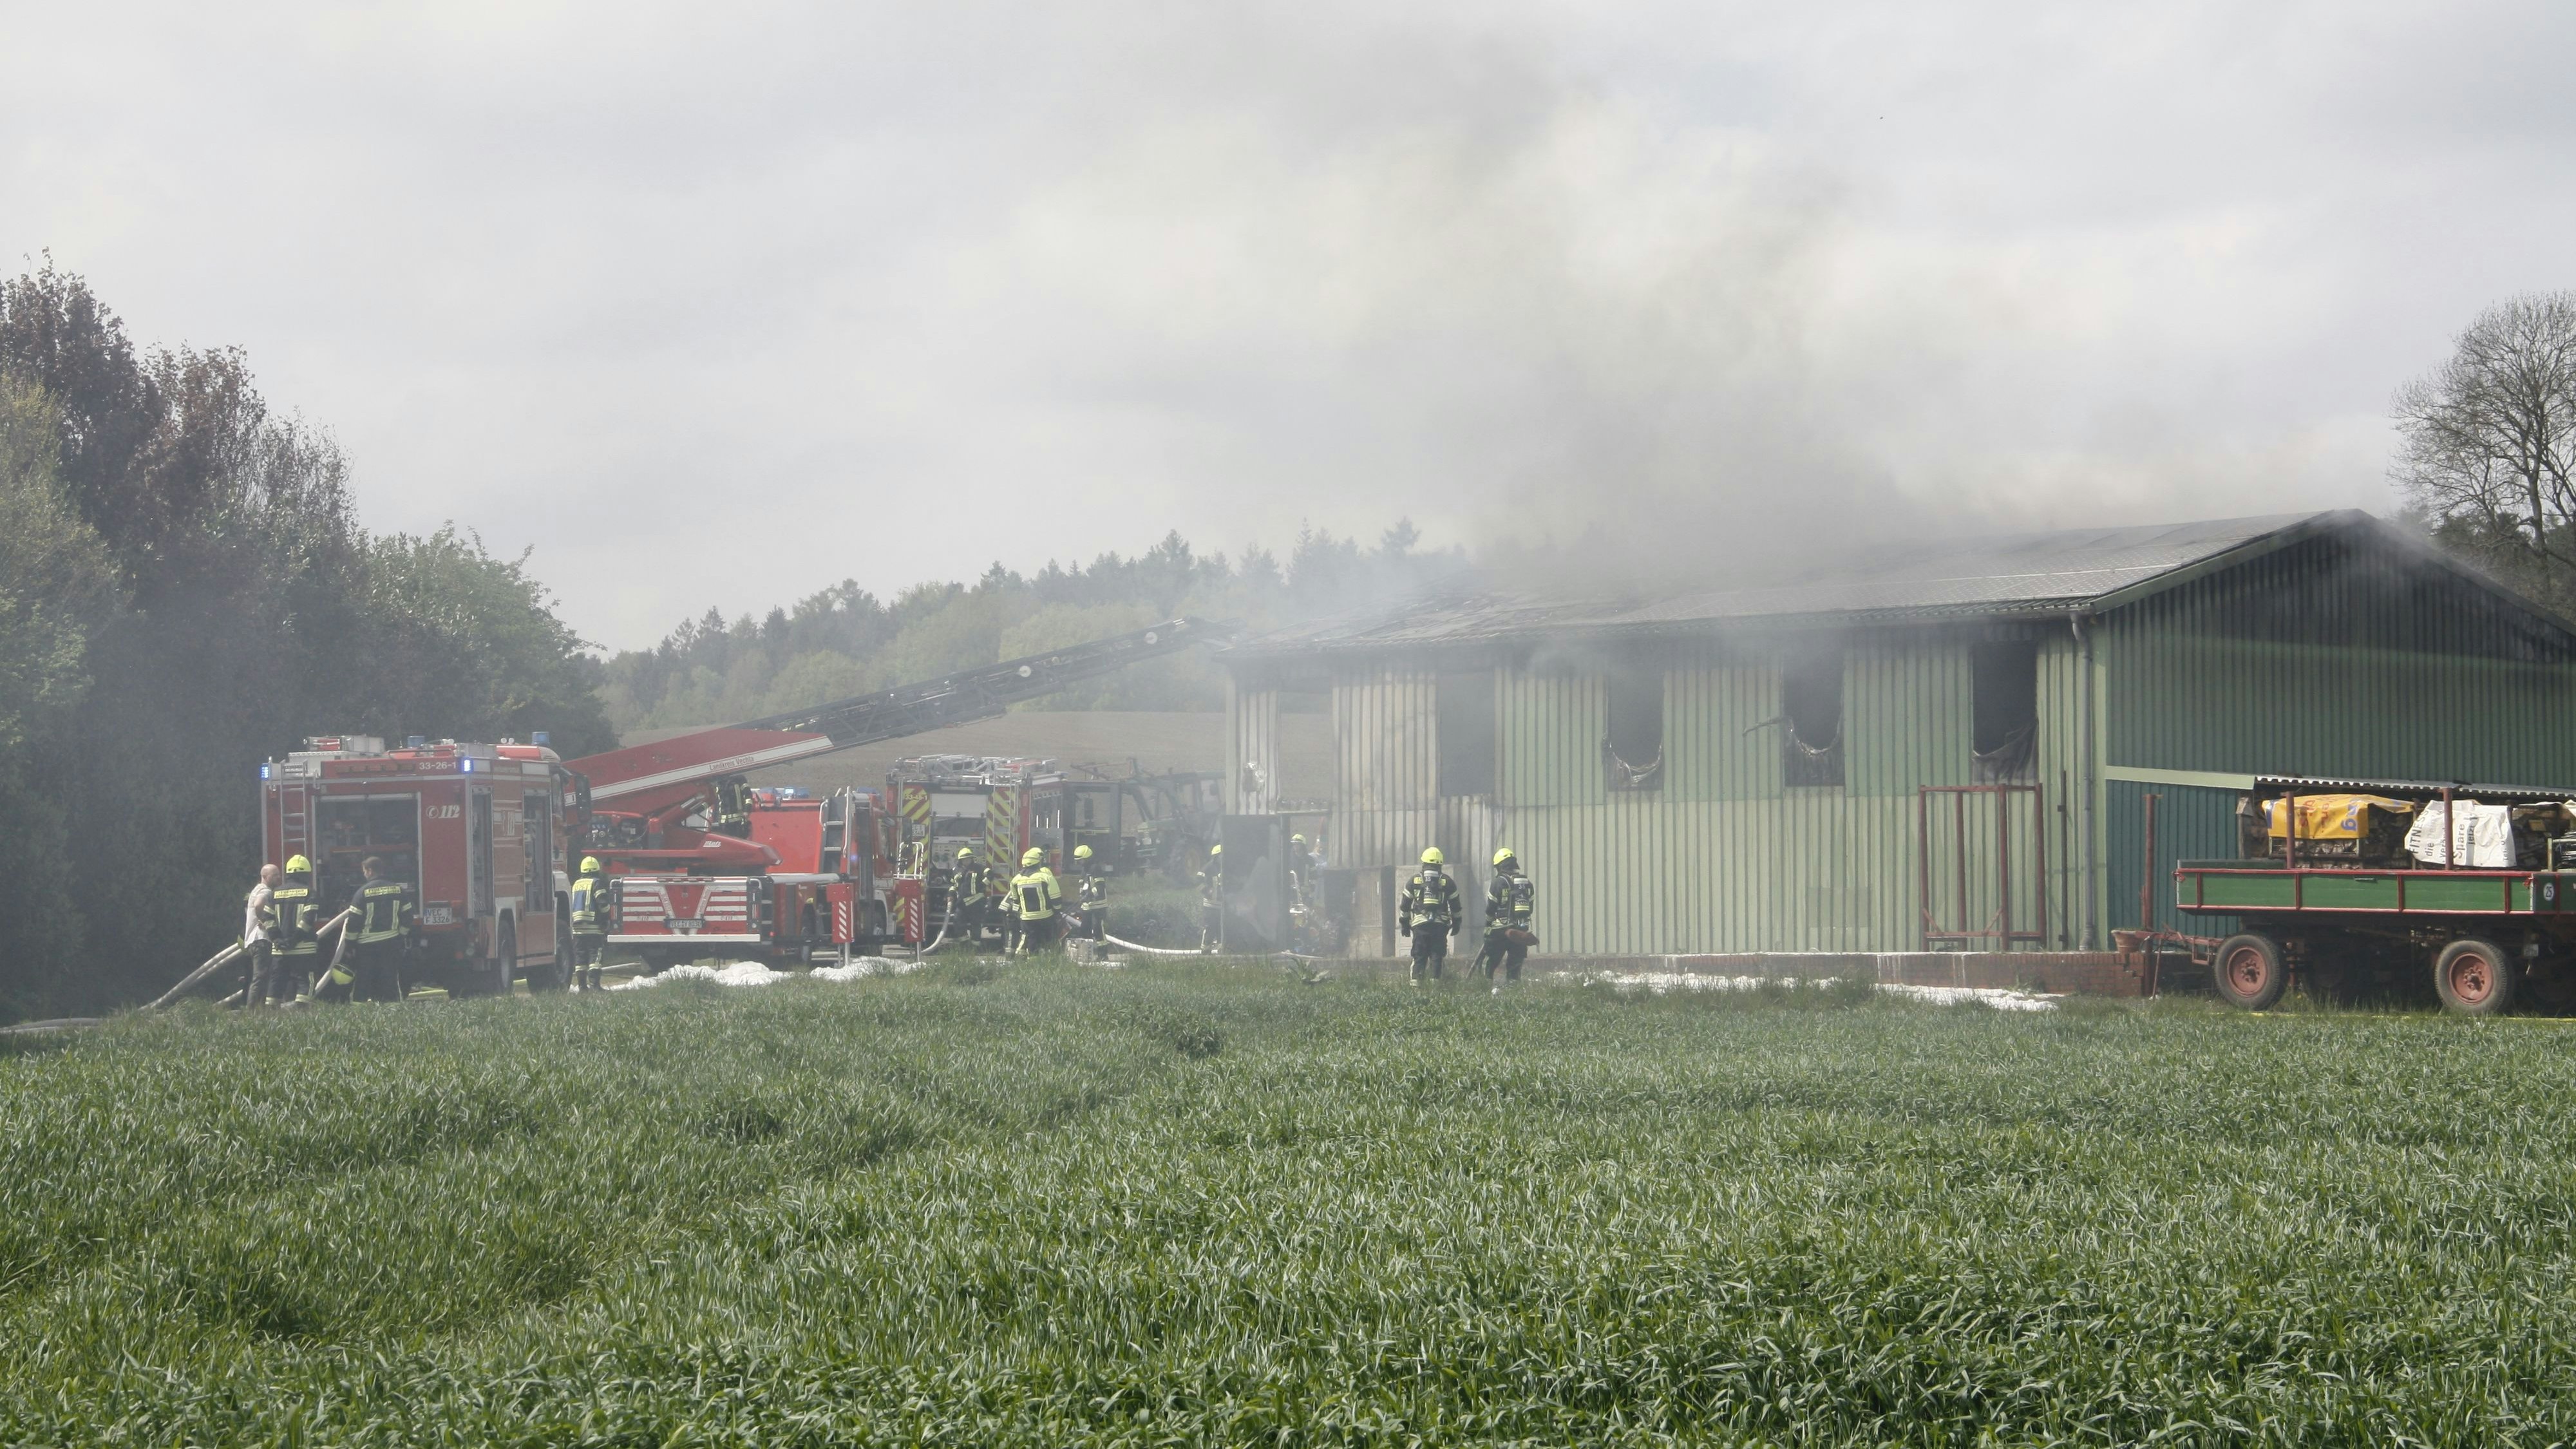 Vor Ort im Einsatz war neben den Feuerwehren Damme, Borringhausen und Osterfeine auch die Feuerwehr Neuenkirchen. Foto: Thomes